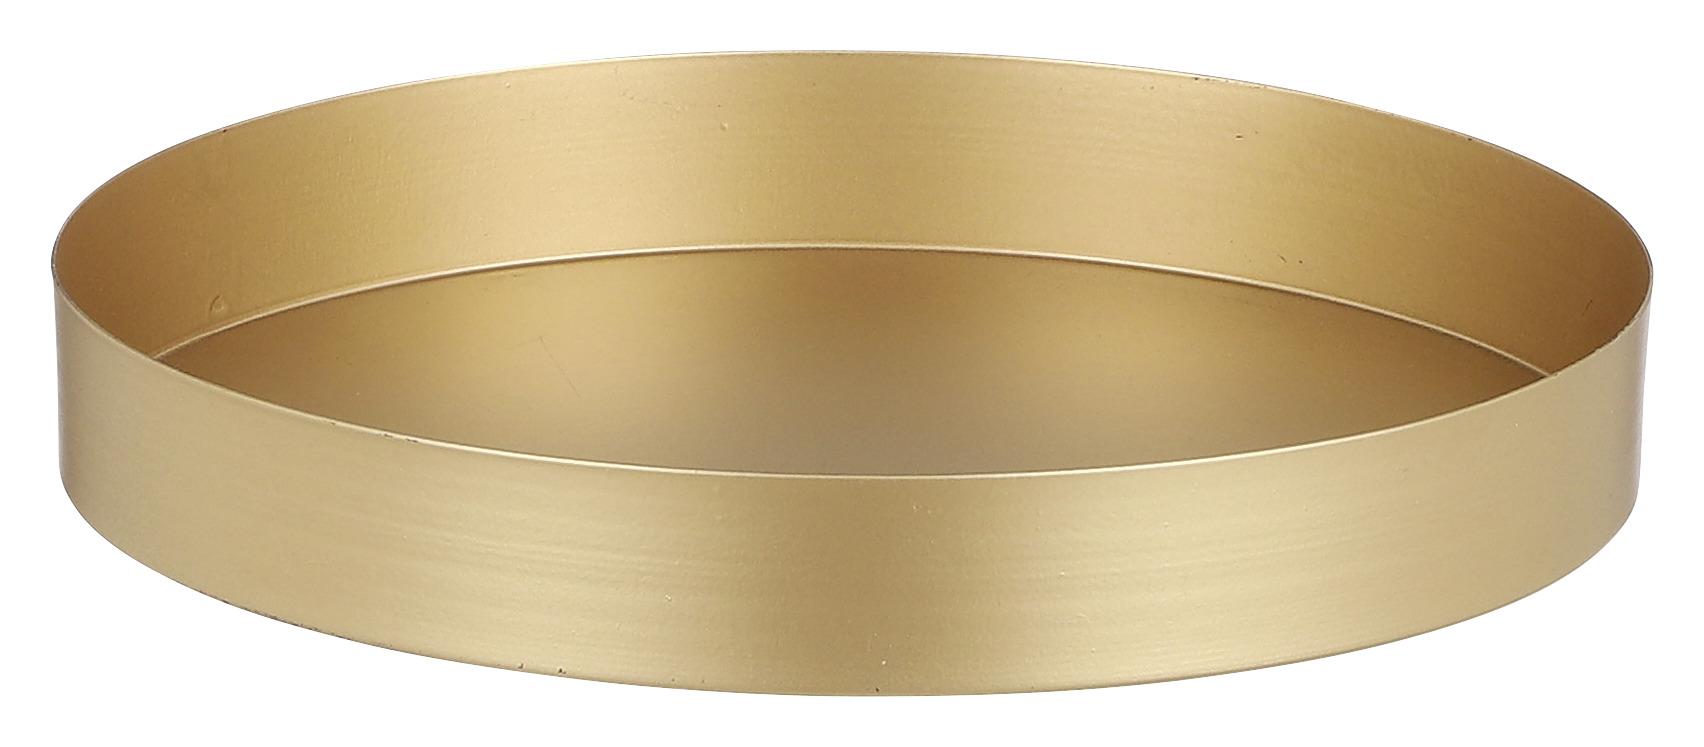 Dekorační Talíř Lumina, Ø: 21,5cm - barvy zlata, Romantický / Rustikální, kov (21,5/3cm)